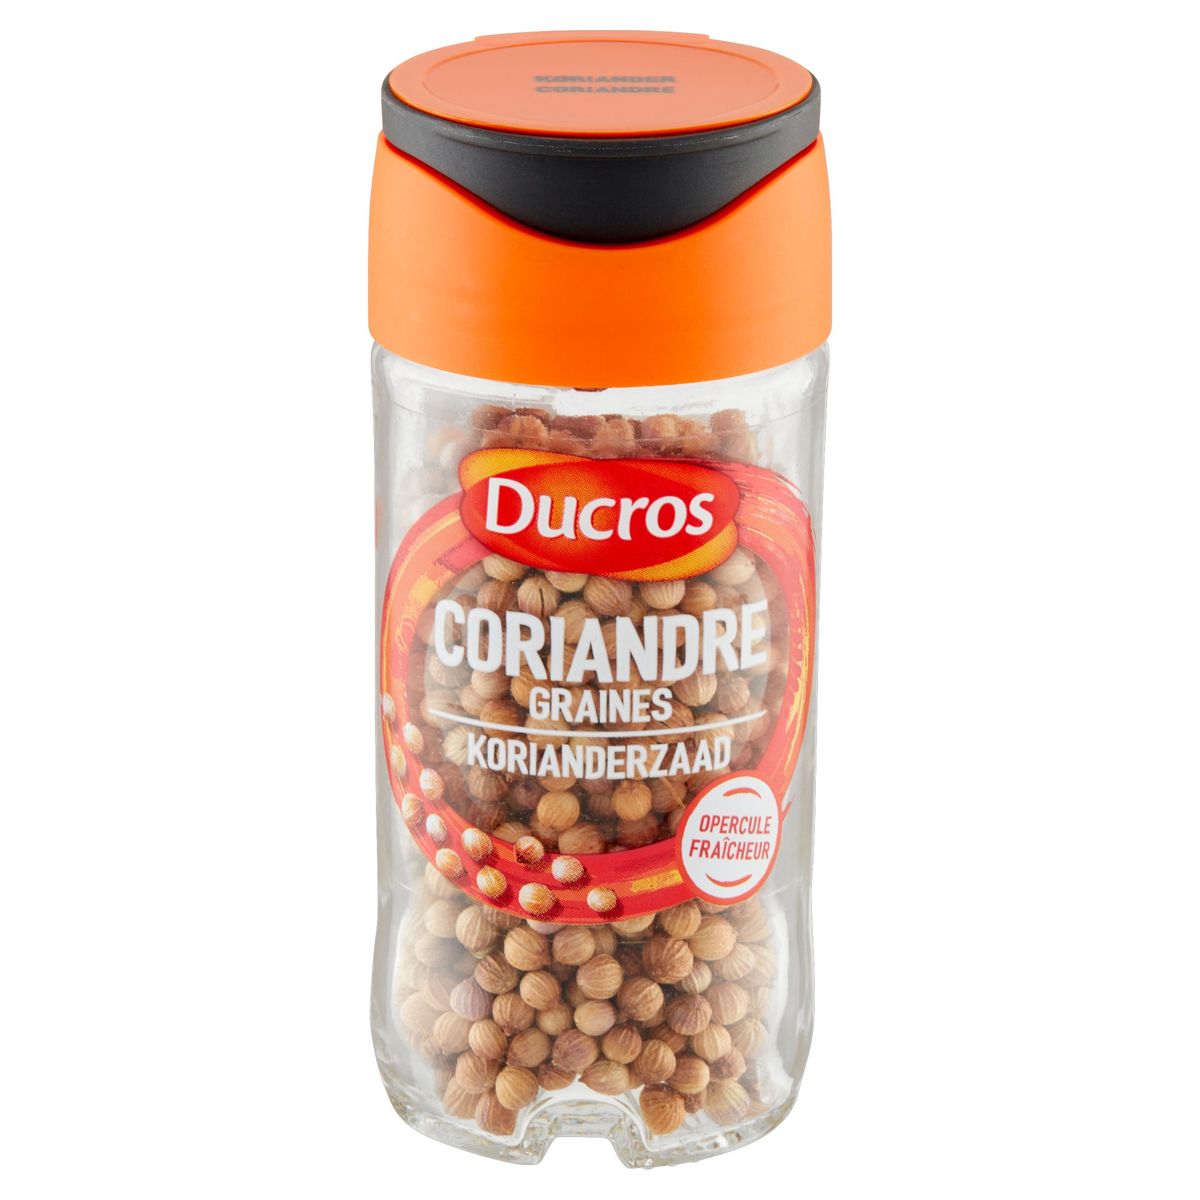 Ducros Coriandre Graines 19 g